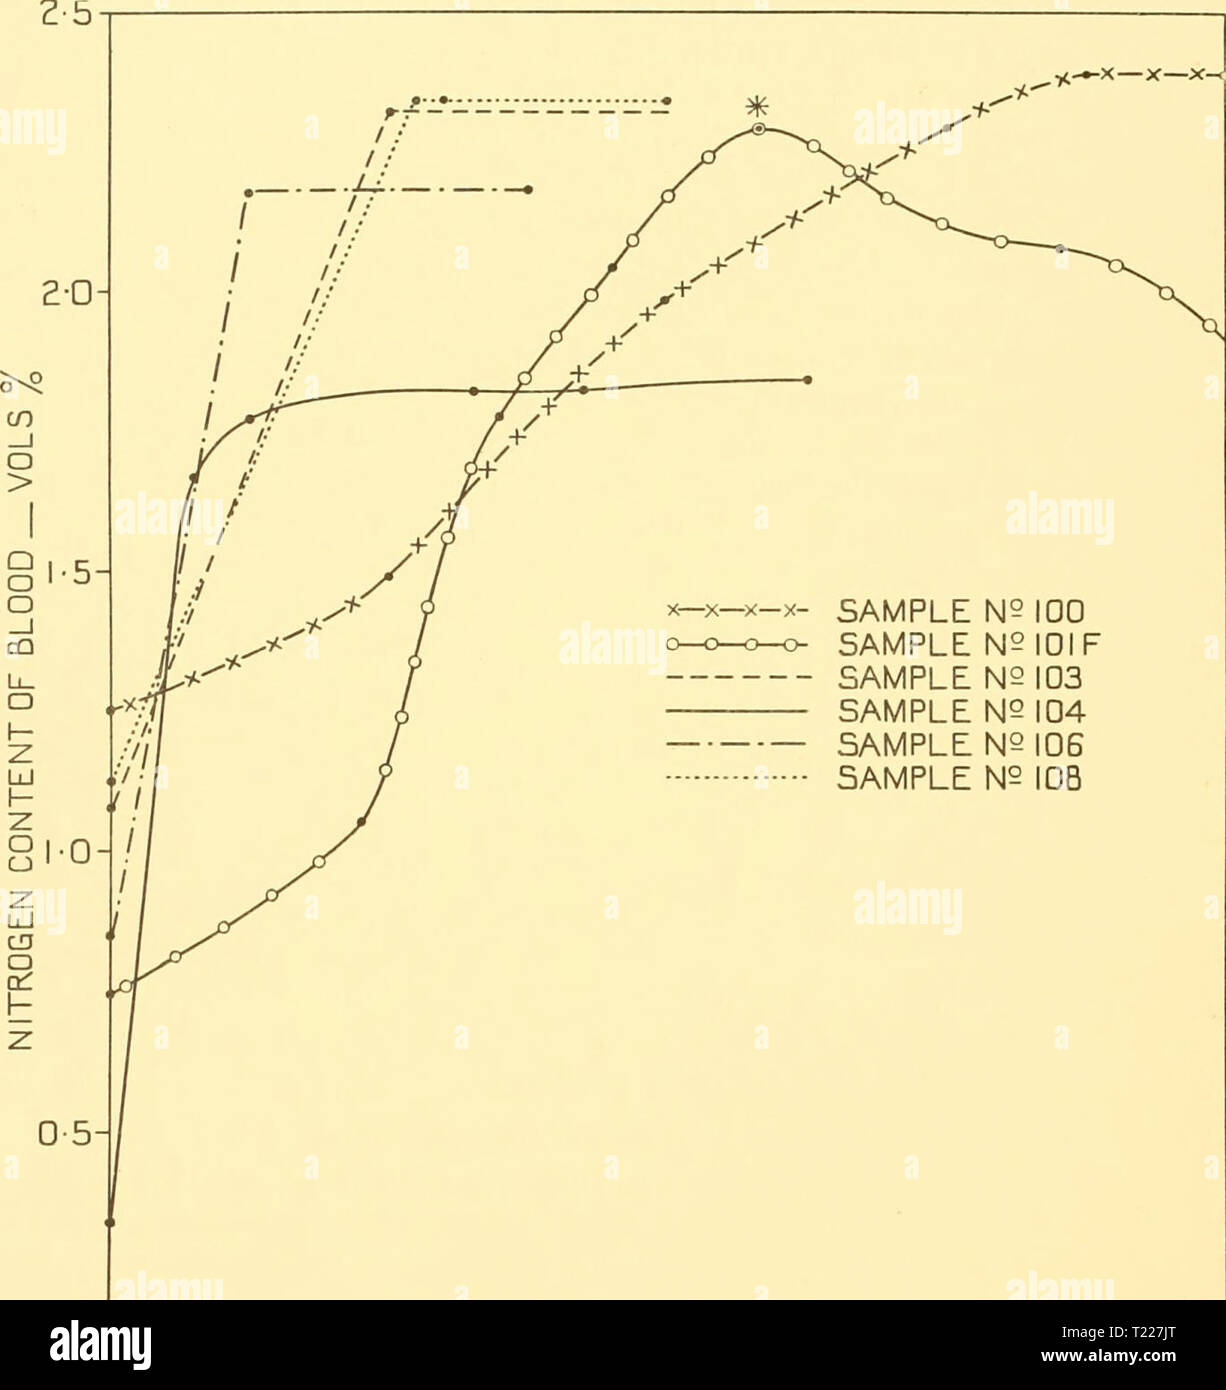 Imagen de archivo de la página 455 del Descubrimiento (1933) informes informes descubrimiento discoveryreports07inst Año: 1933 388 informes de detección de 608 mm. de mercurio en el aire. Octylic alcohol, el cual es comúnmente utilizado en el análisis de gases para impedir que se produzca espuma, tiende a disminuir la capacidad de nitrógeno. Afortunadamente de muestras de sangre de ballena N5I00 muestra N2I0si muestra N2 103 muestra N5 104 muestra N2 N2 muestra registro ID lOB 30 40 20 minutos tiempo- Fig. 3, Solución progresiva de nitrógeno en la sangre de ballena. * Alcohol Octylic fue añadido en este punto y nitrógeno salió de nuevo solución. Raramente froths o estos experimentos sería hav Foto de stock